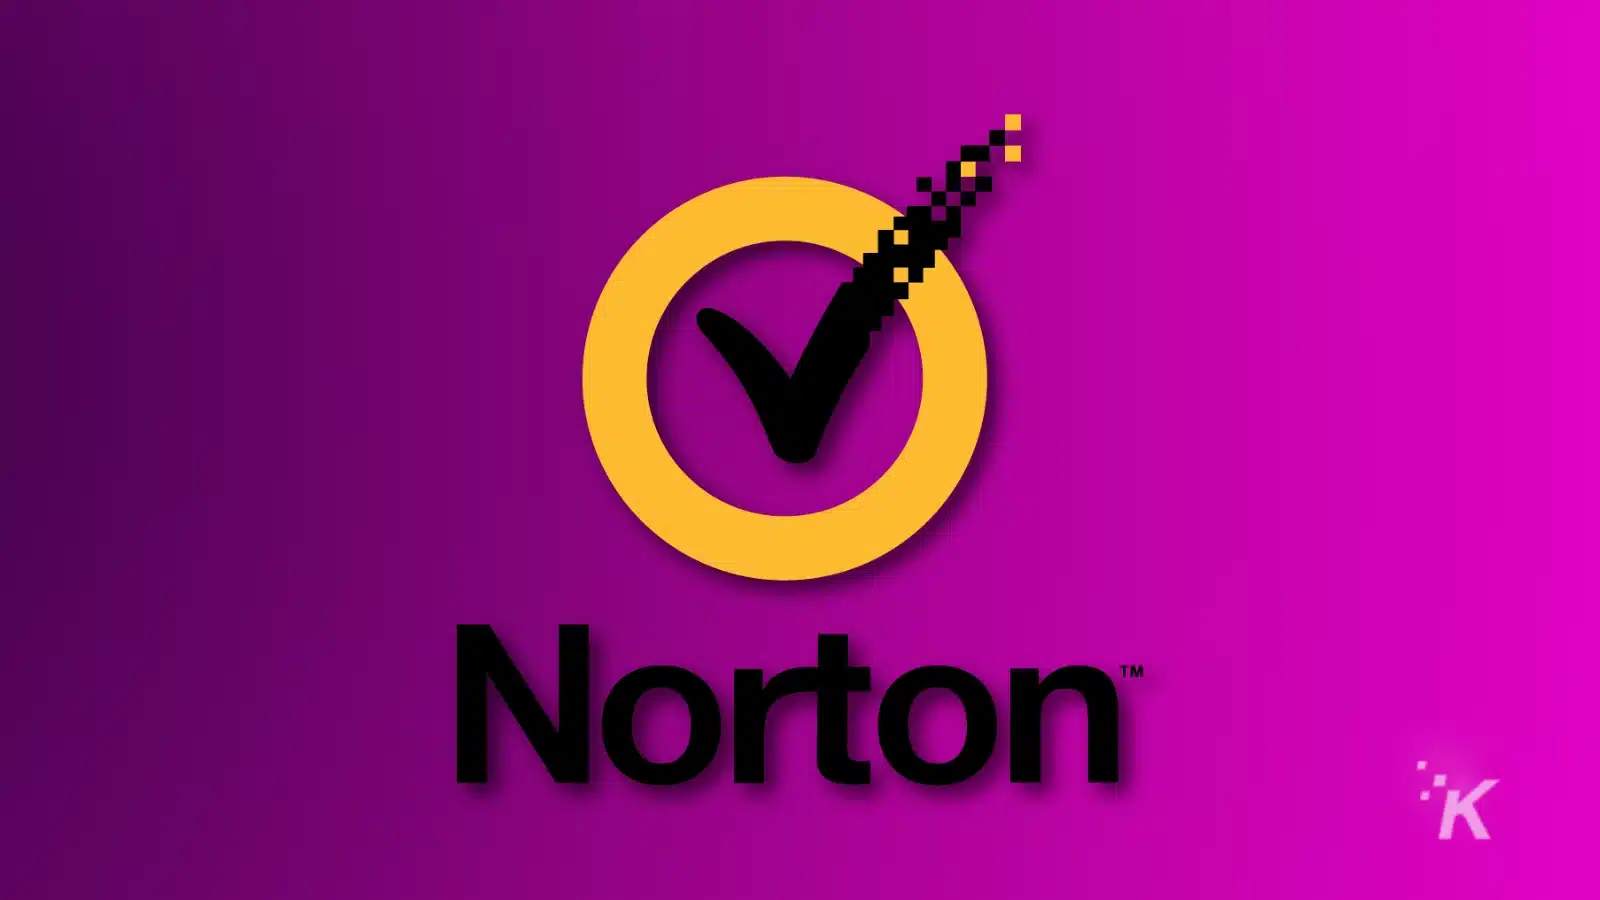 شعار Norton مع علامة اختيار منقطة على خلفية أرجوانية.